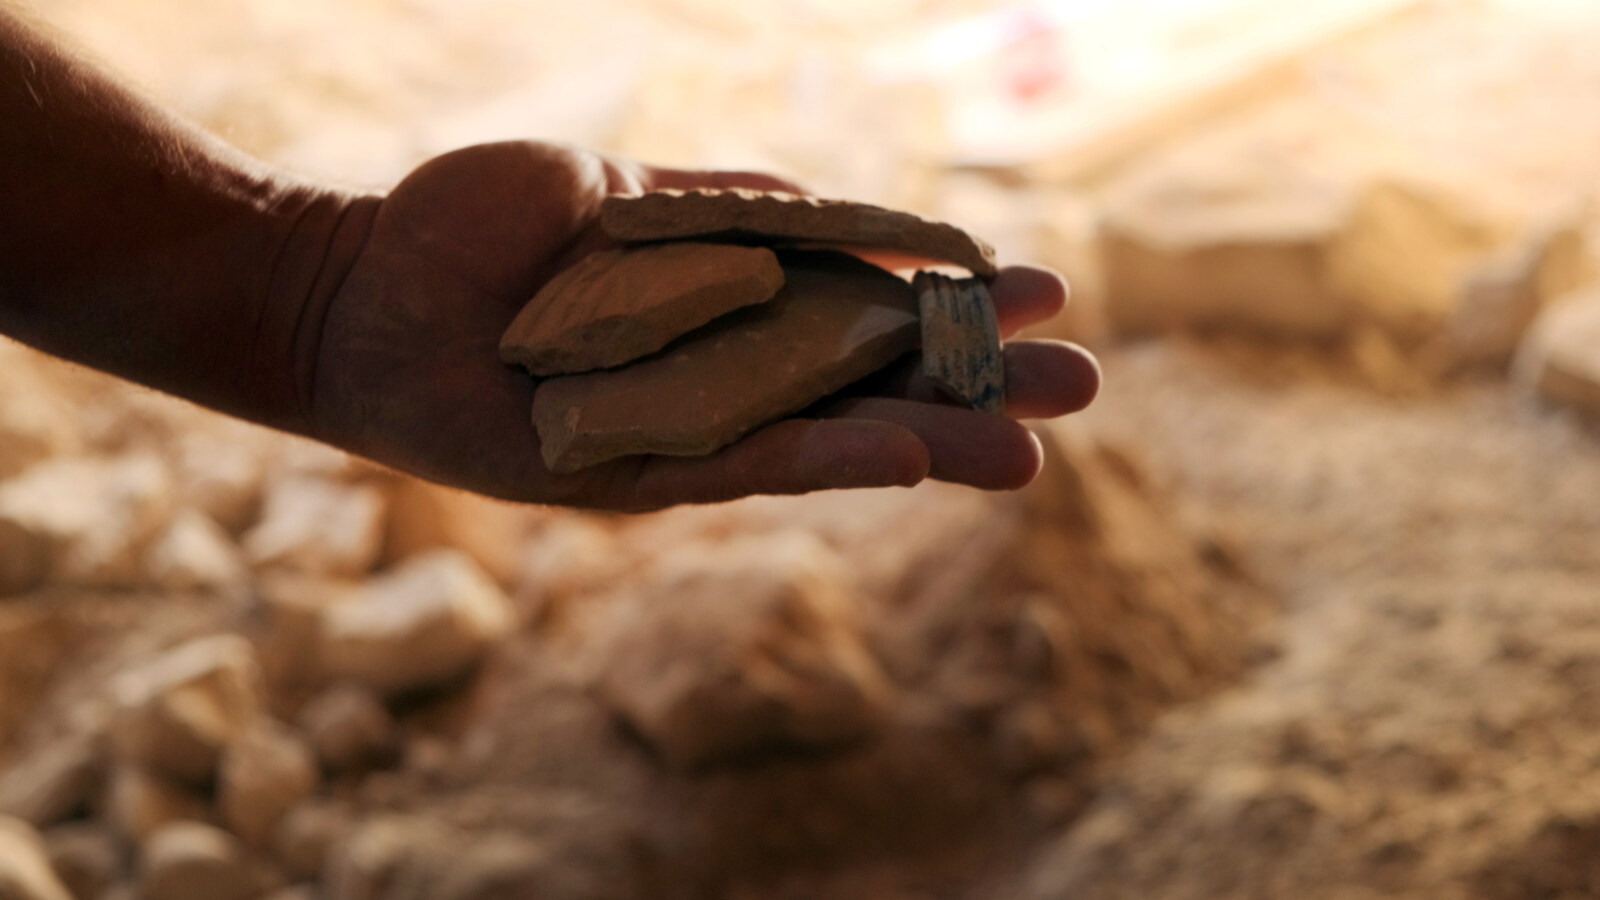 שברי חרסים עתיקים שהתגלו במערה (צילום: אמי לאלג'ם, רשות העתיקות)